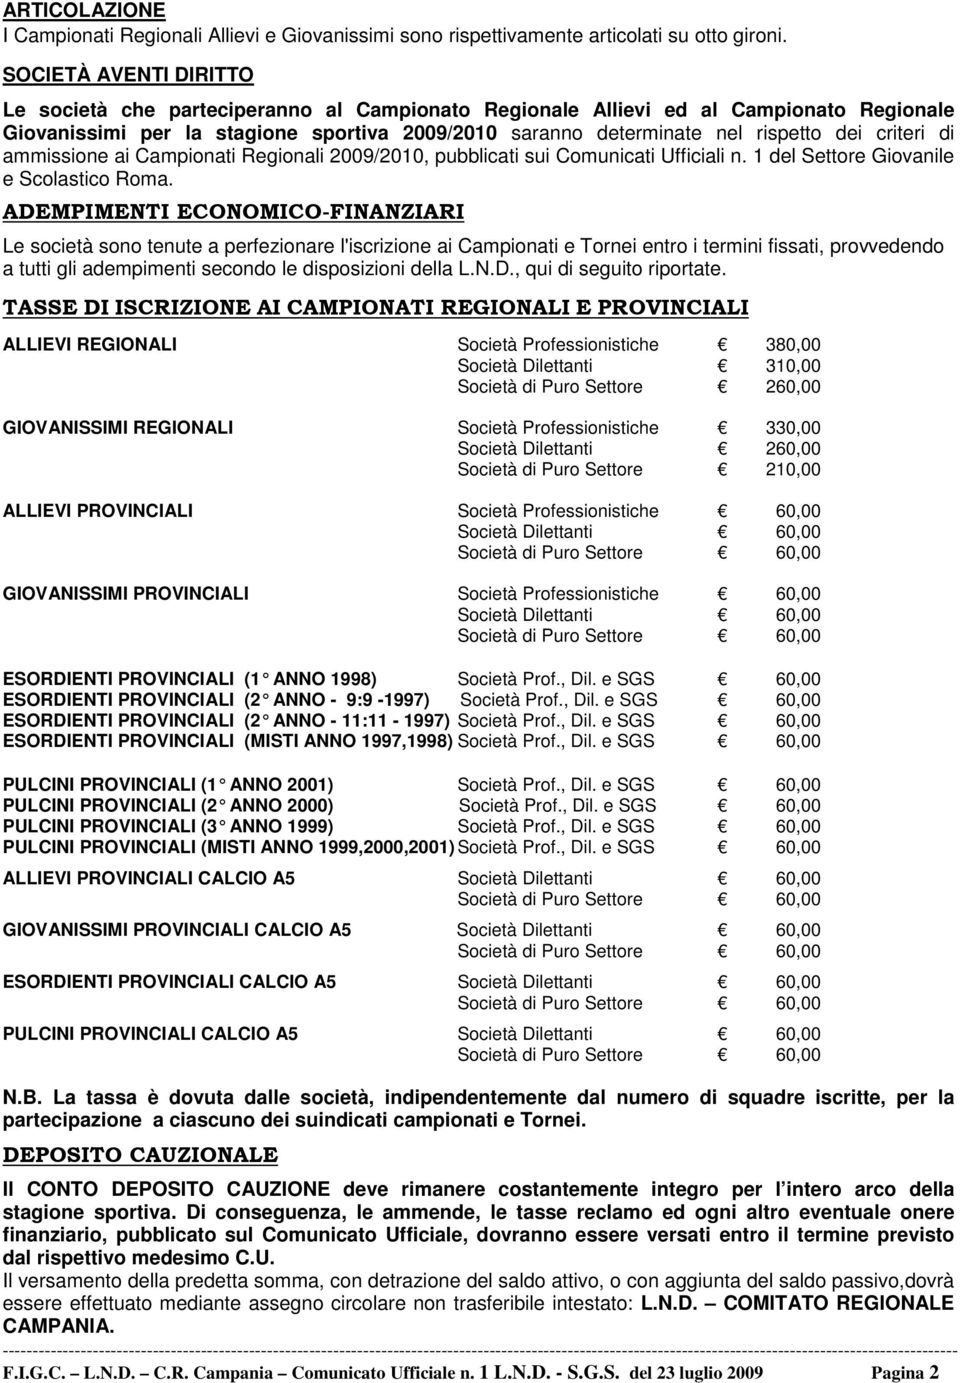 criteri di ammissione ai Campionati Regionali 2009/2010, pubblicati sui Comunicati Ufficiali n. 1 del Settore Giovanile e Scolastico Roma.